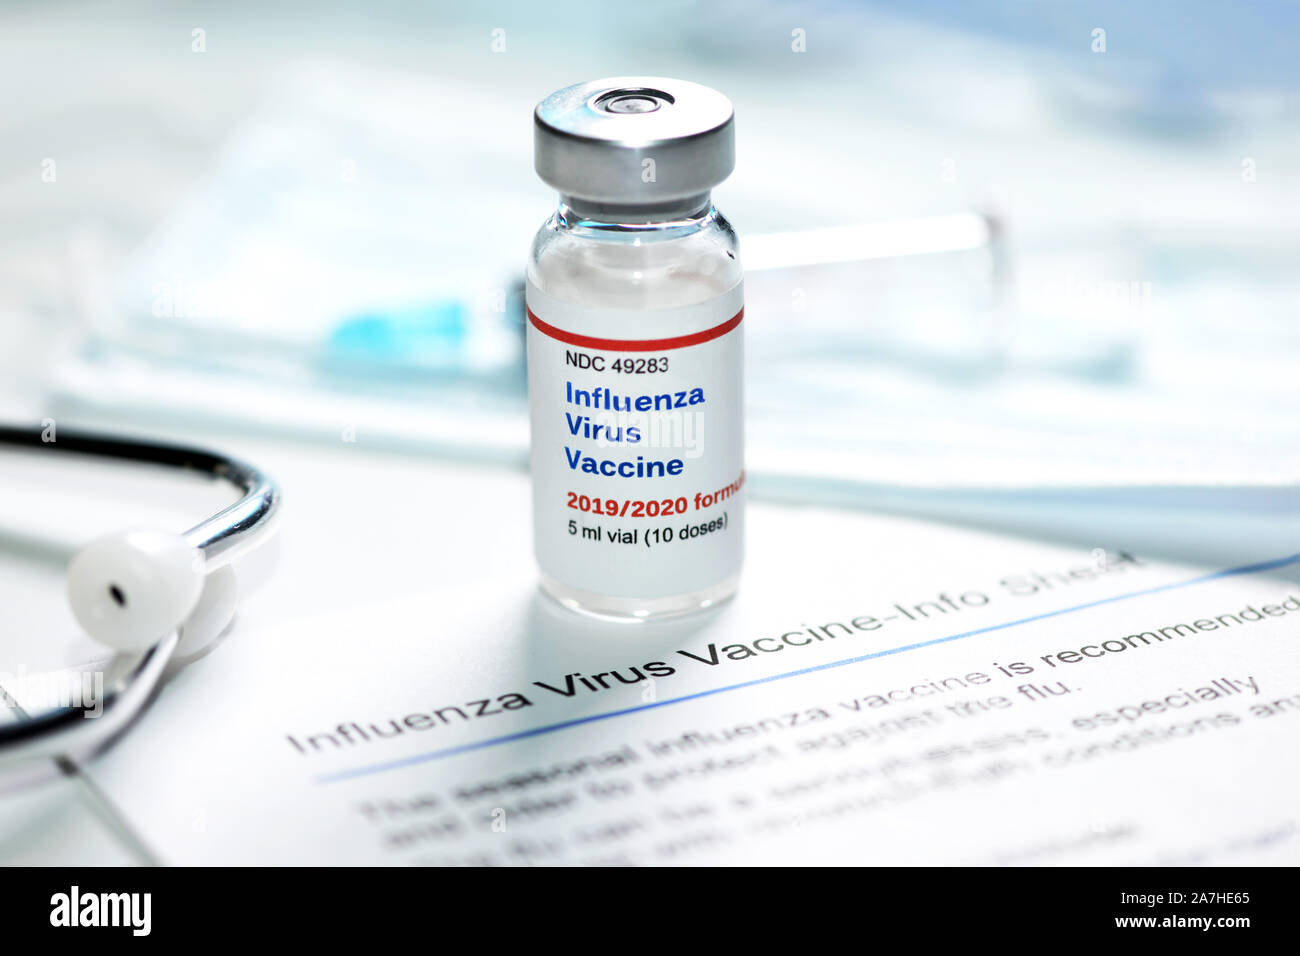 2019-2020 Influenza Virus Impfstoff mit Grippe schuss Informationsblatt und Stethoskop, Maske und Spritze. Stockfoto